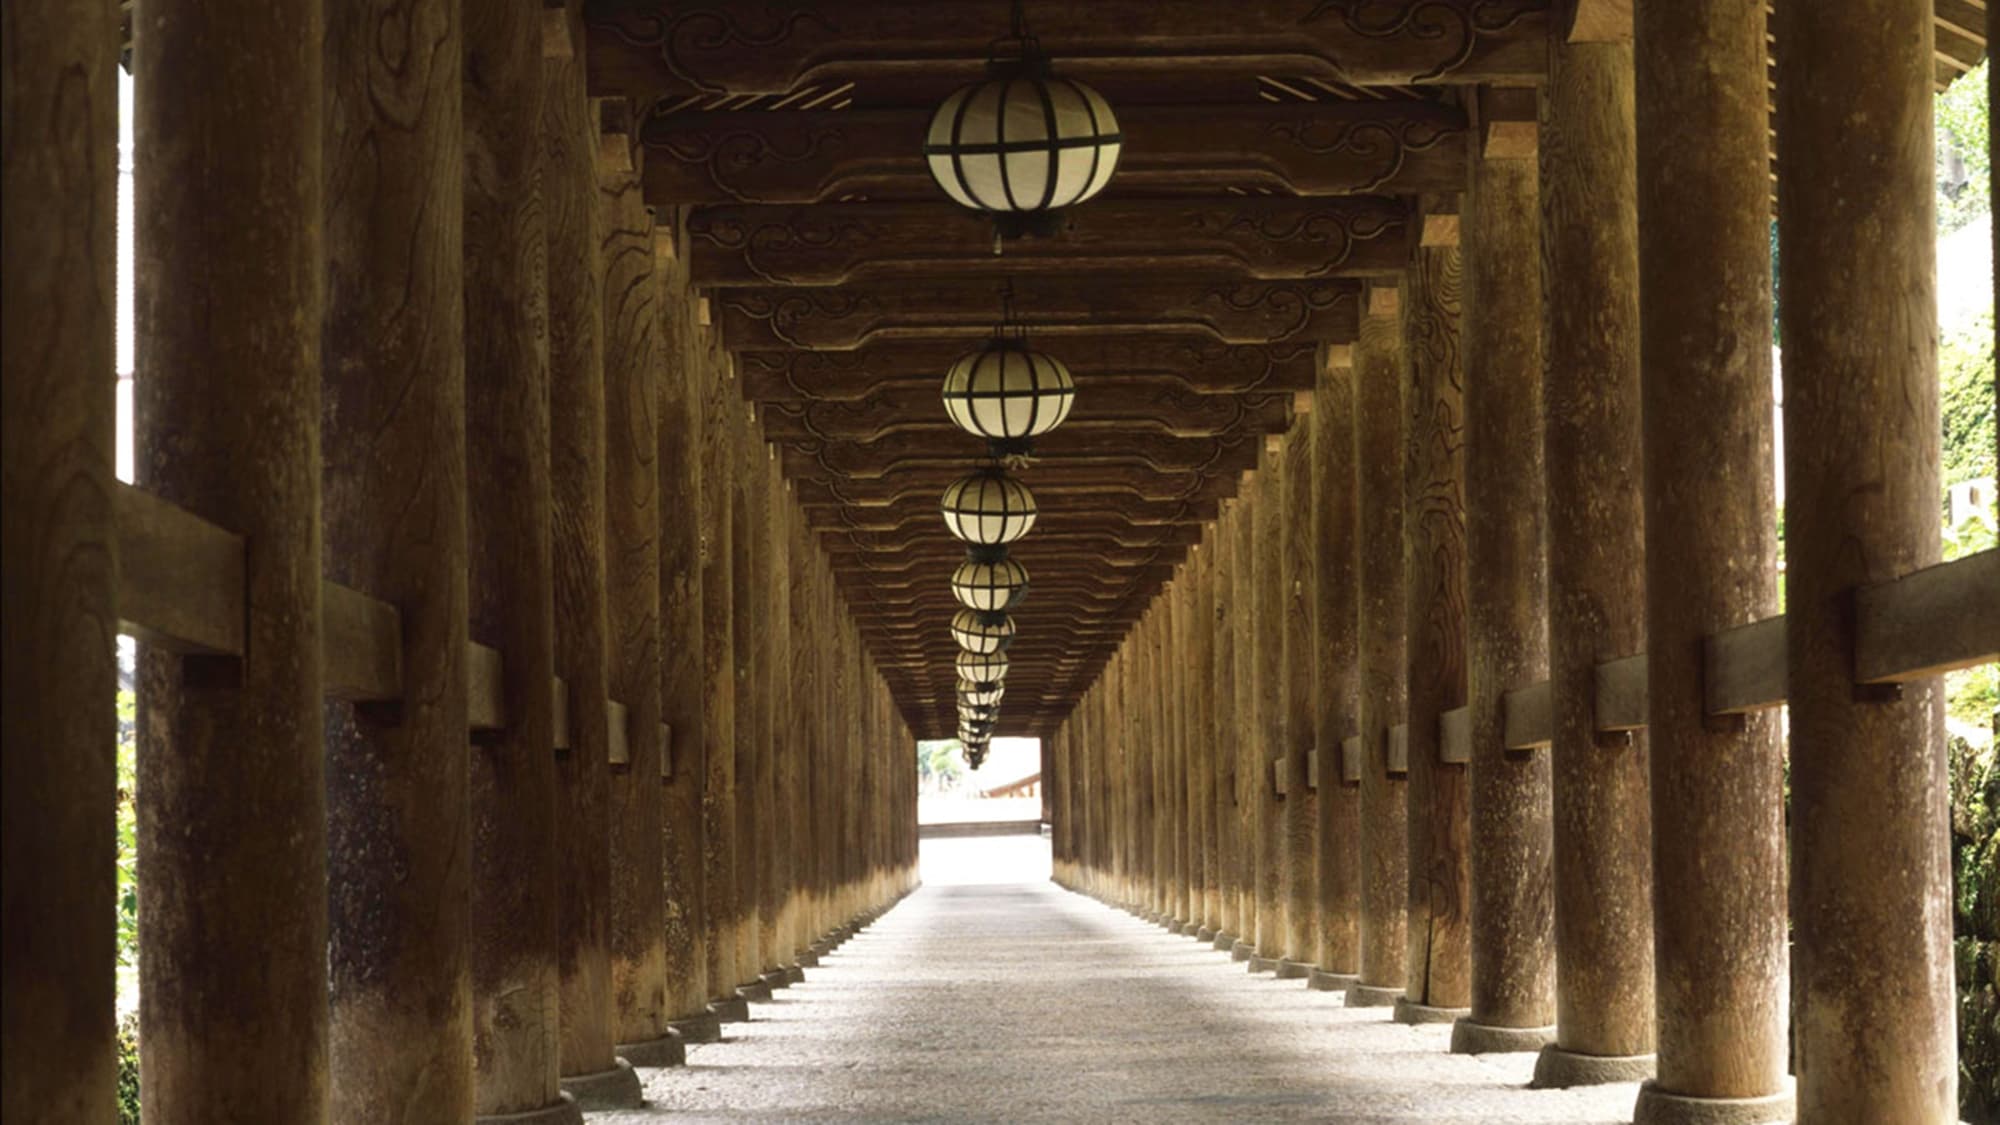 * [Corridor of Hase-dera, Nara] At the important cultural property "Noborirou", elegant Hase-shaped lanterns are hung.